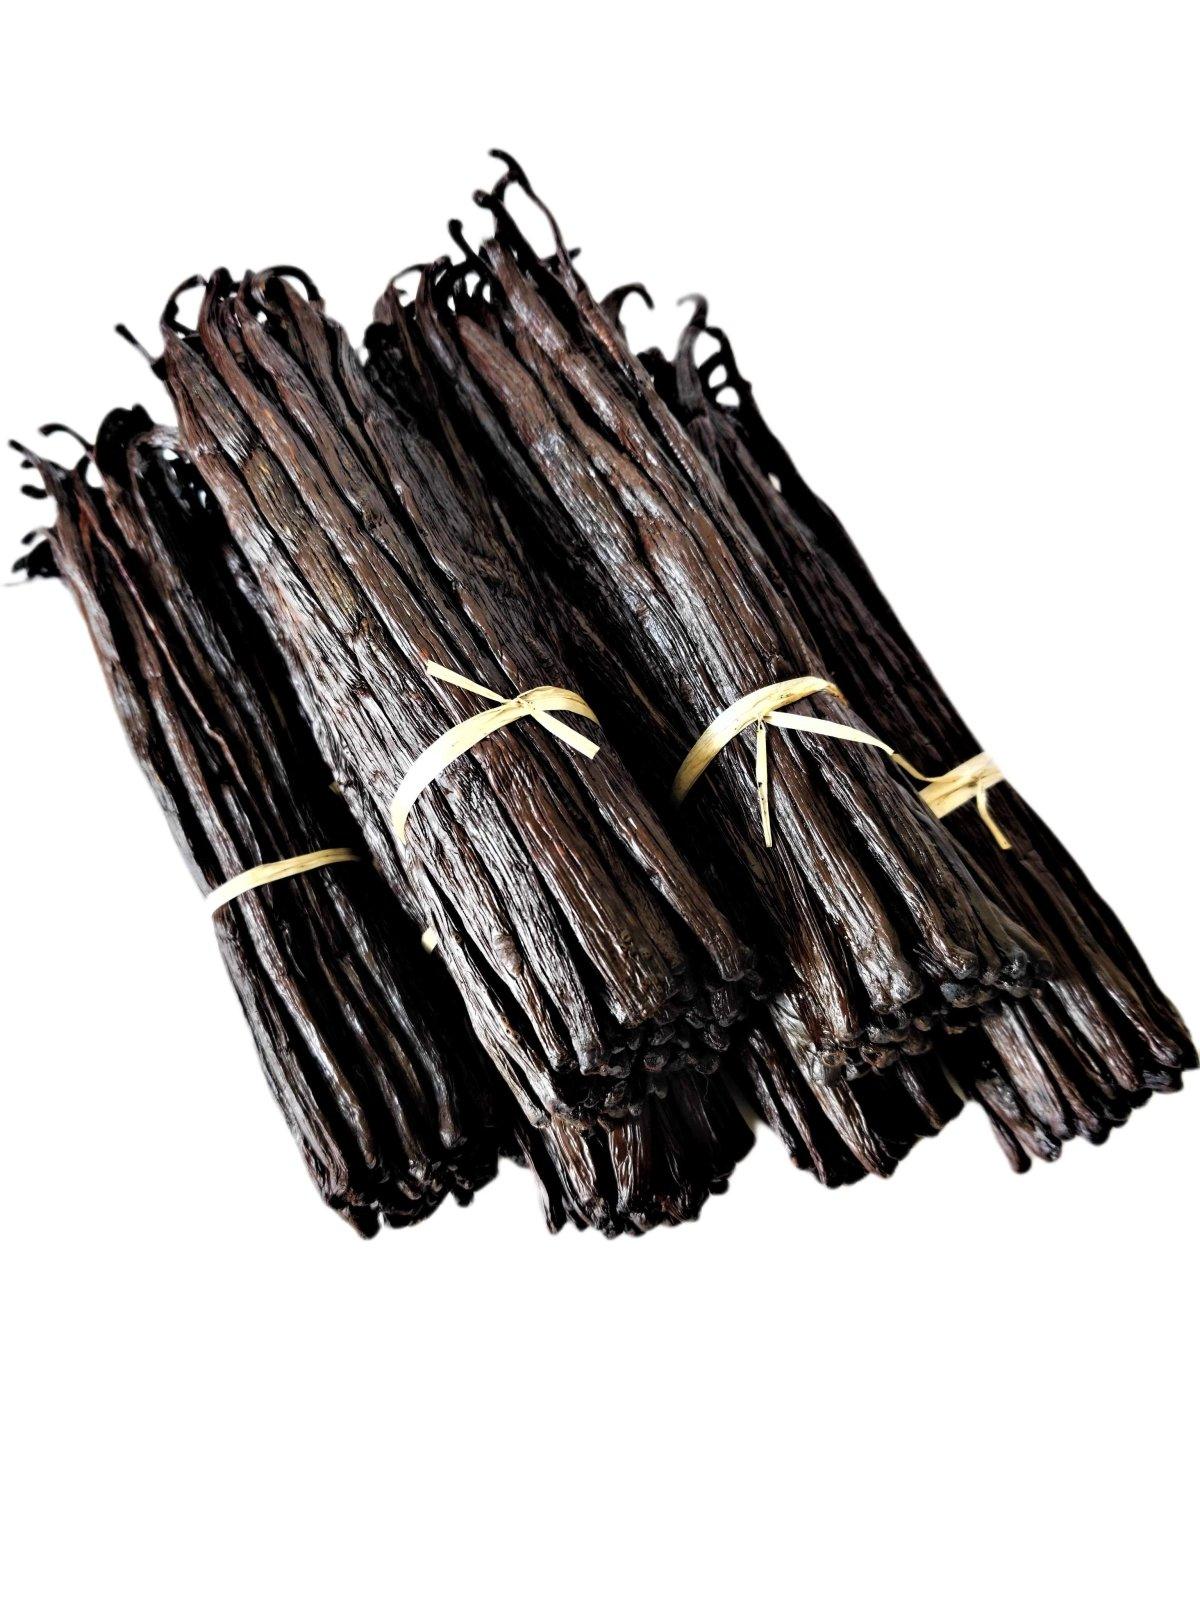 Gousses de vanille Bourbon de Madagascar Gourmet Grade-A<br> Pour l'extrait et la cuisson<br> 1 once, 3 onces, 5 onces, 10 onces, 20 onces, 30 onces